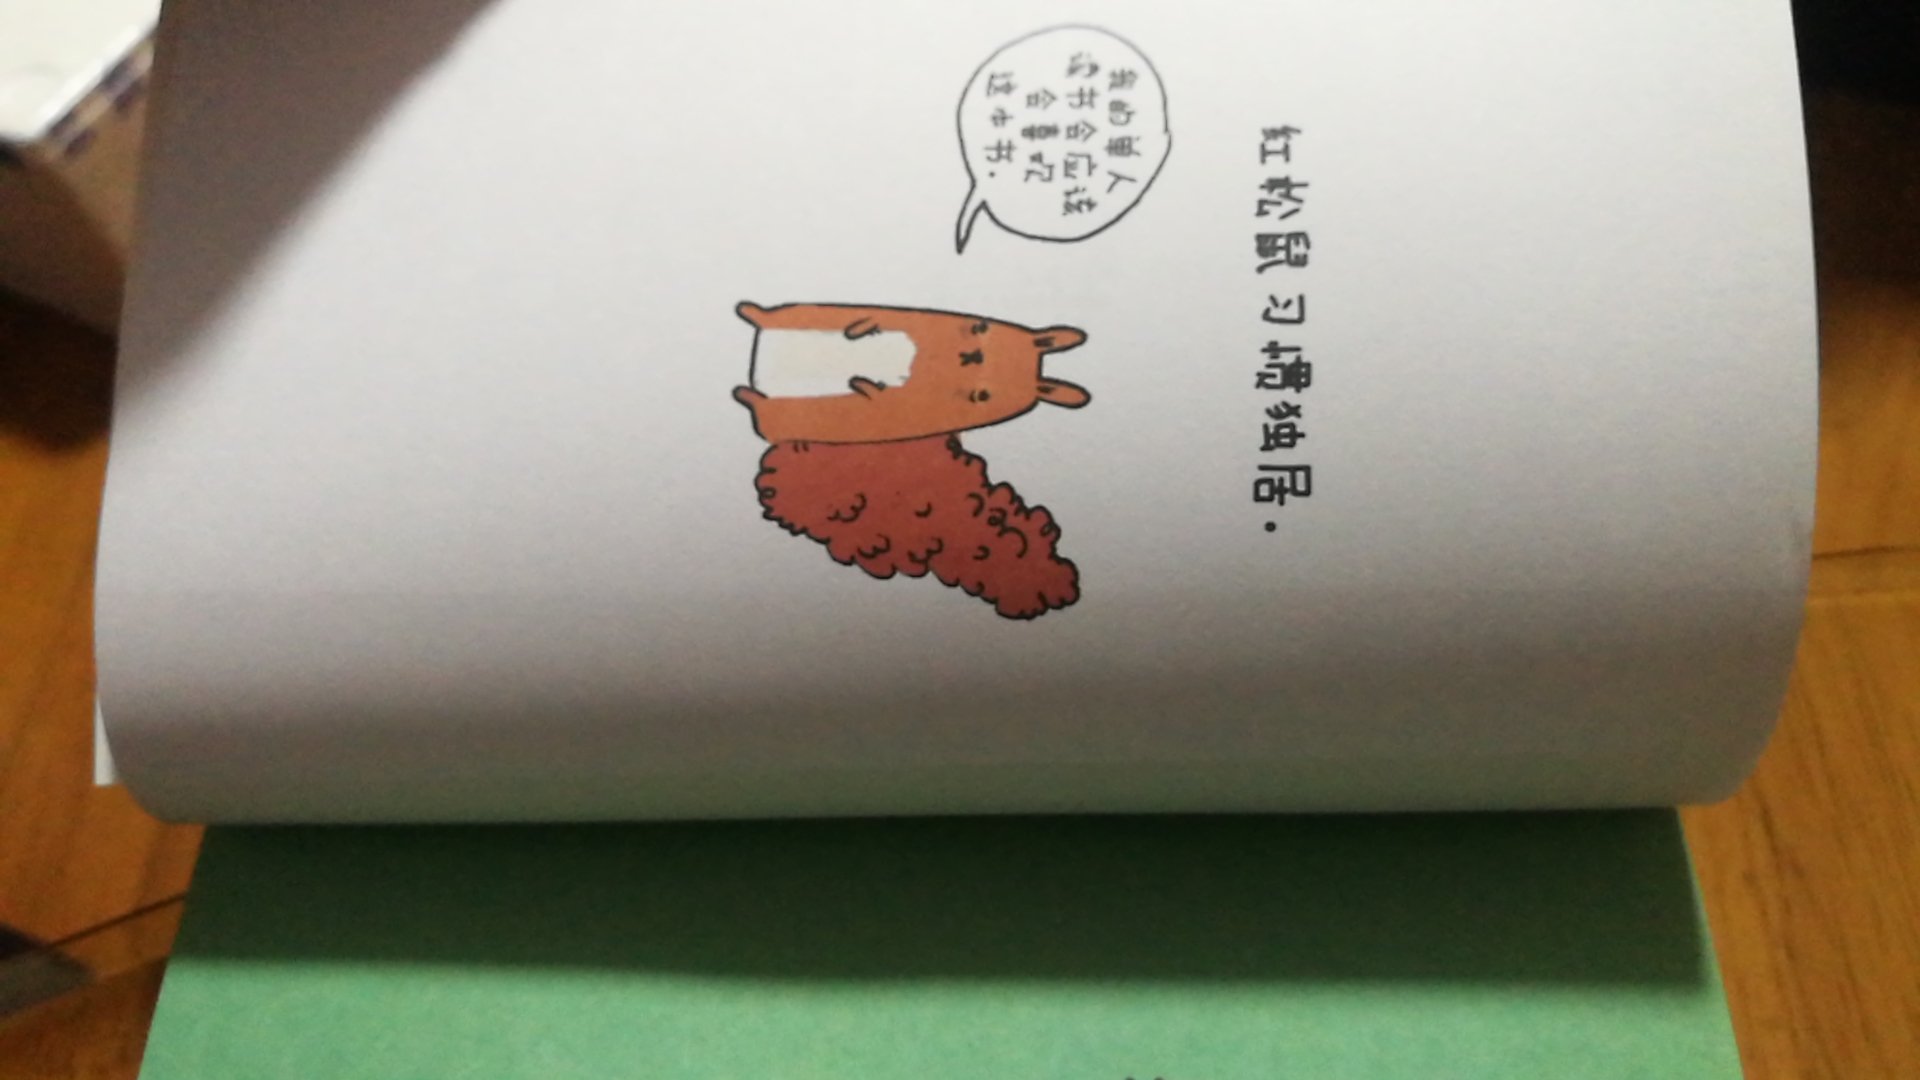 自从在南京的先锋书店看到这本书后就一直想买，赶着做活动买了好几本类似的书，小朋友知道了好多小动物的科普知识，不错。物流就是快，赞一个！